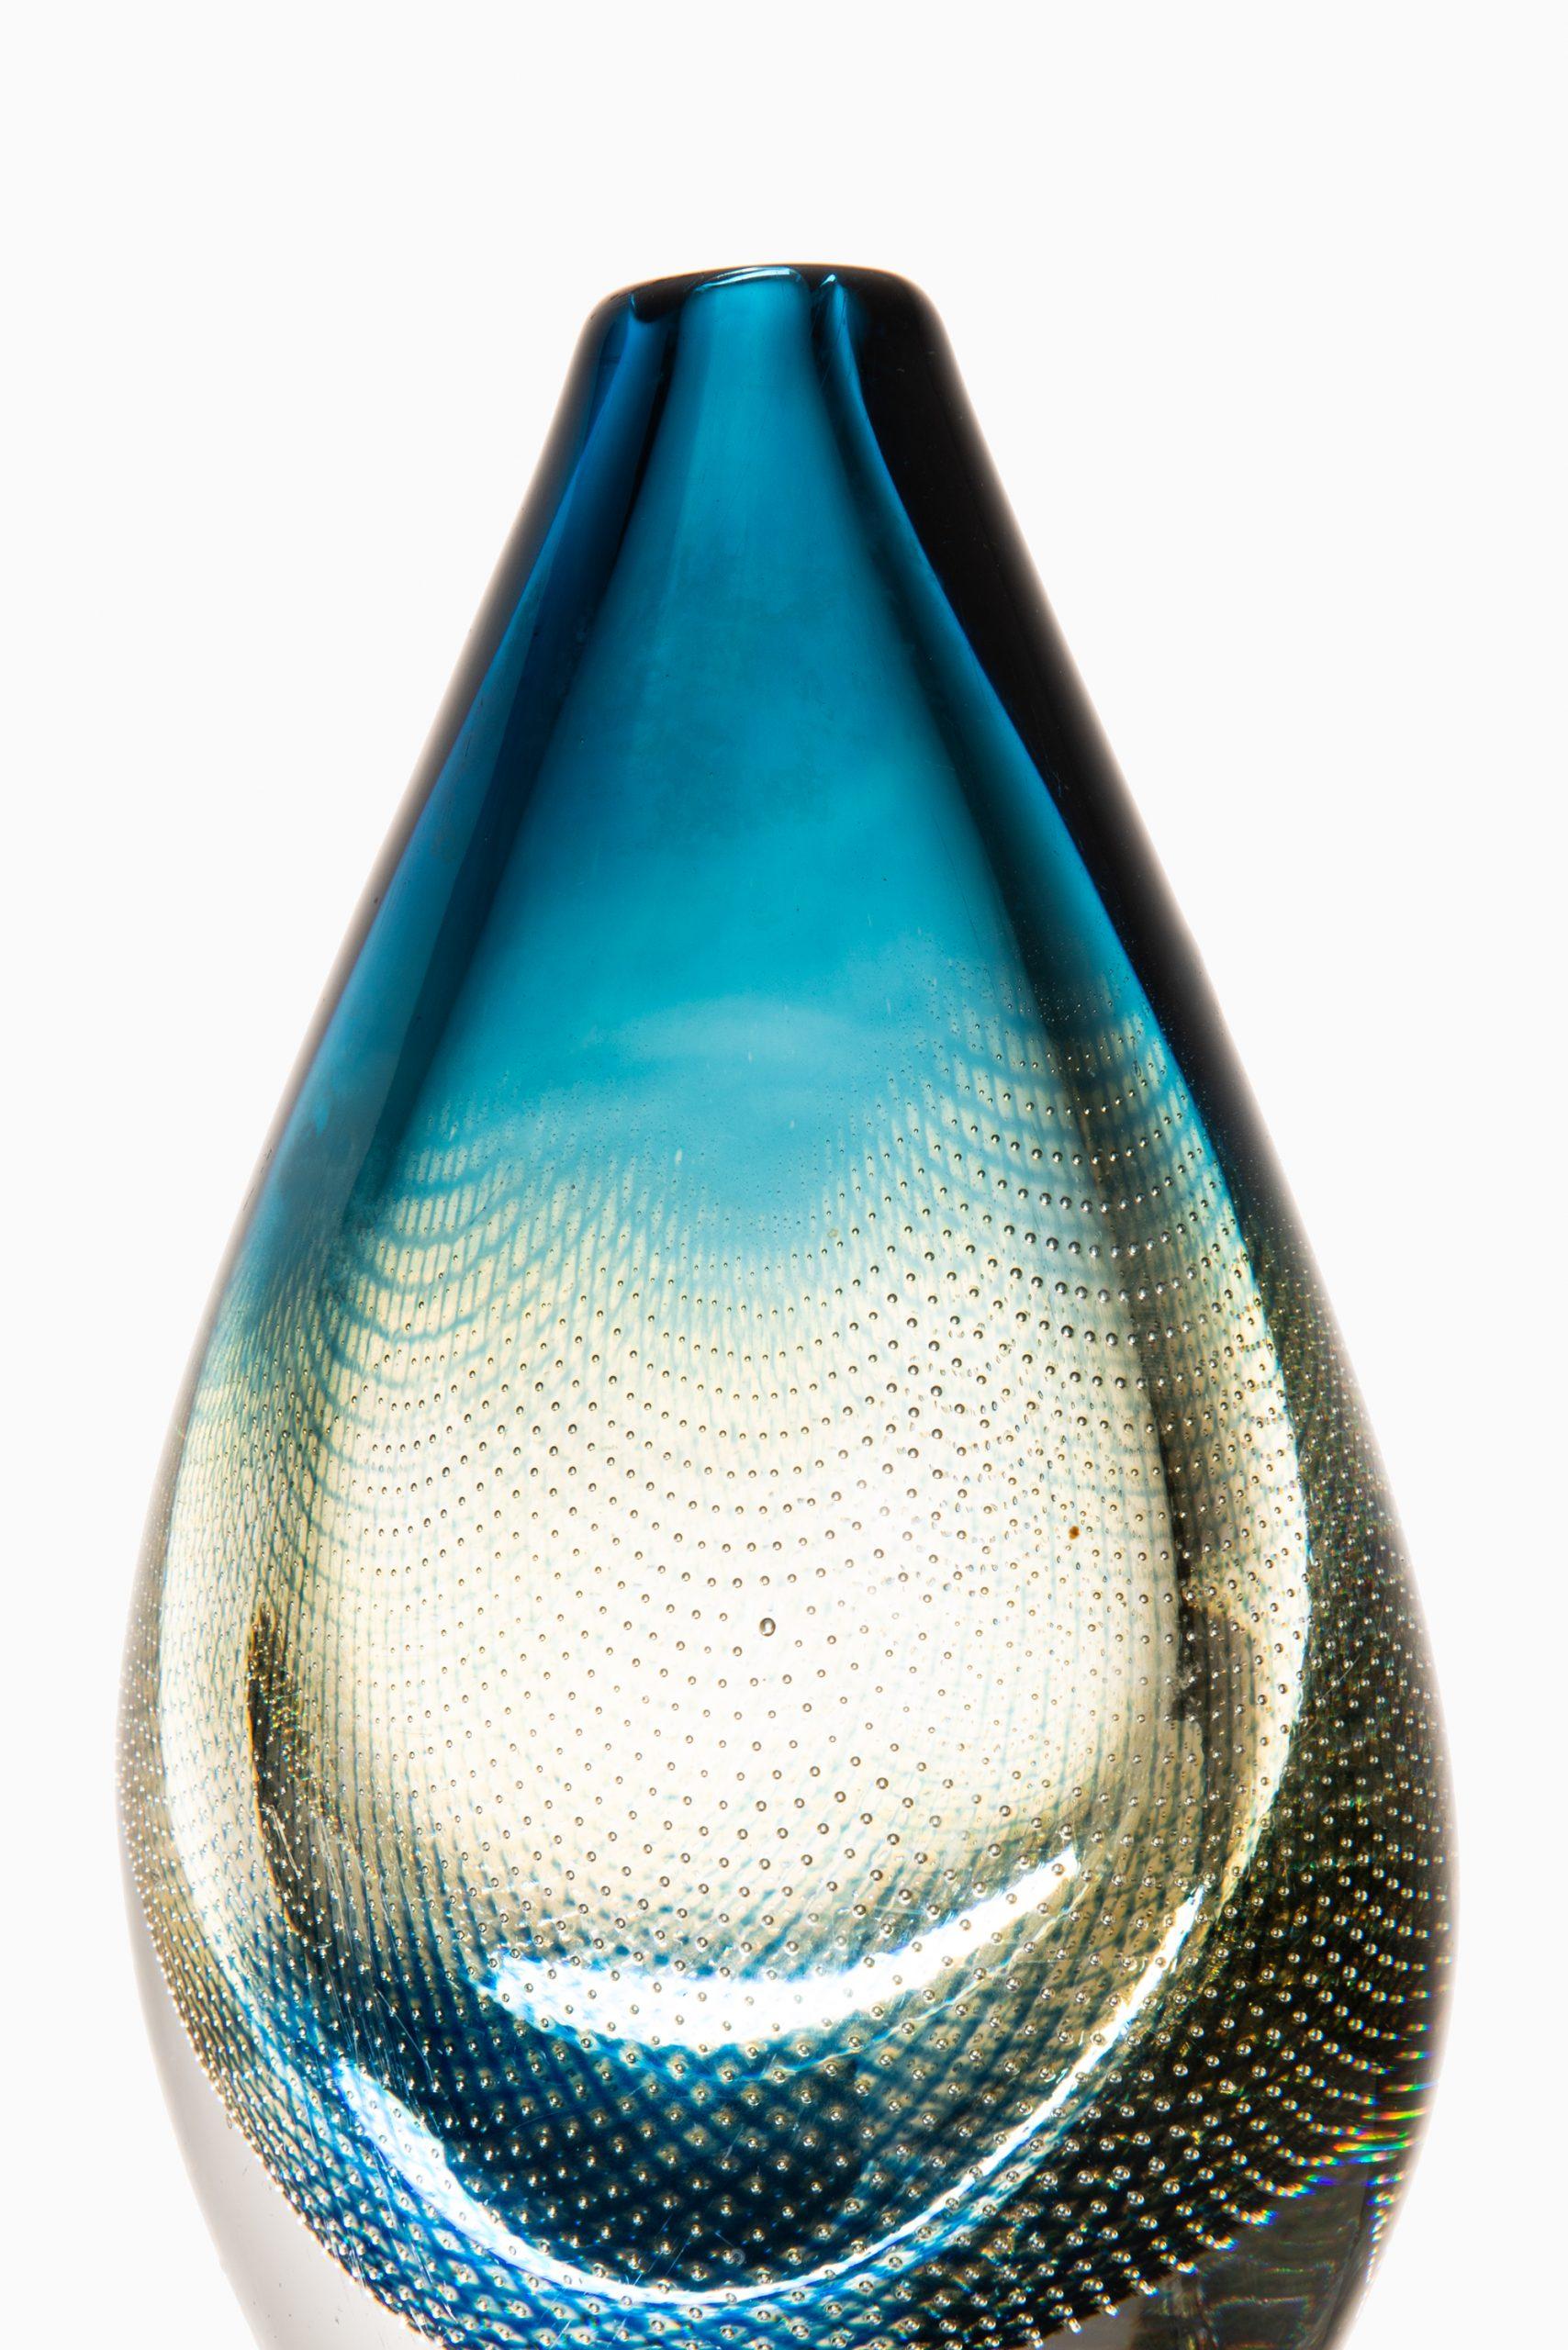 Vase en verre modèle Kraka conçu par Sven Palmqvist. Produit par Orrefors en Suède. Signé 